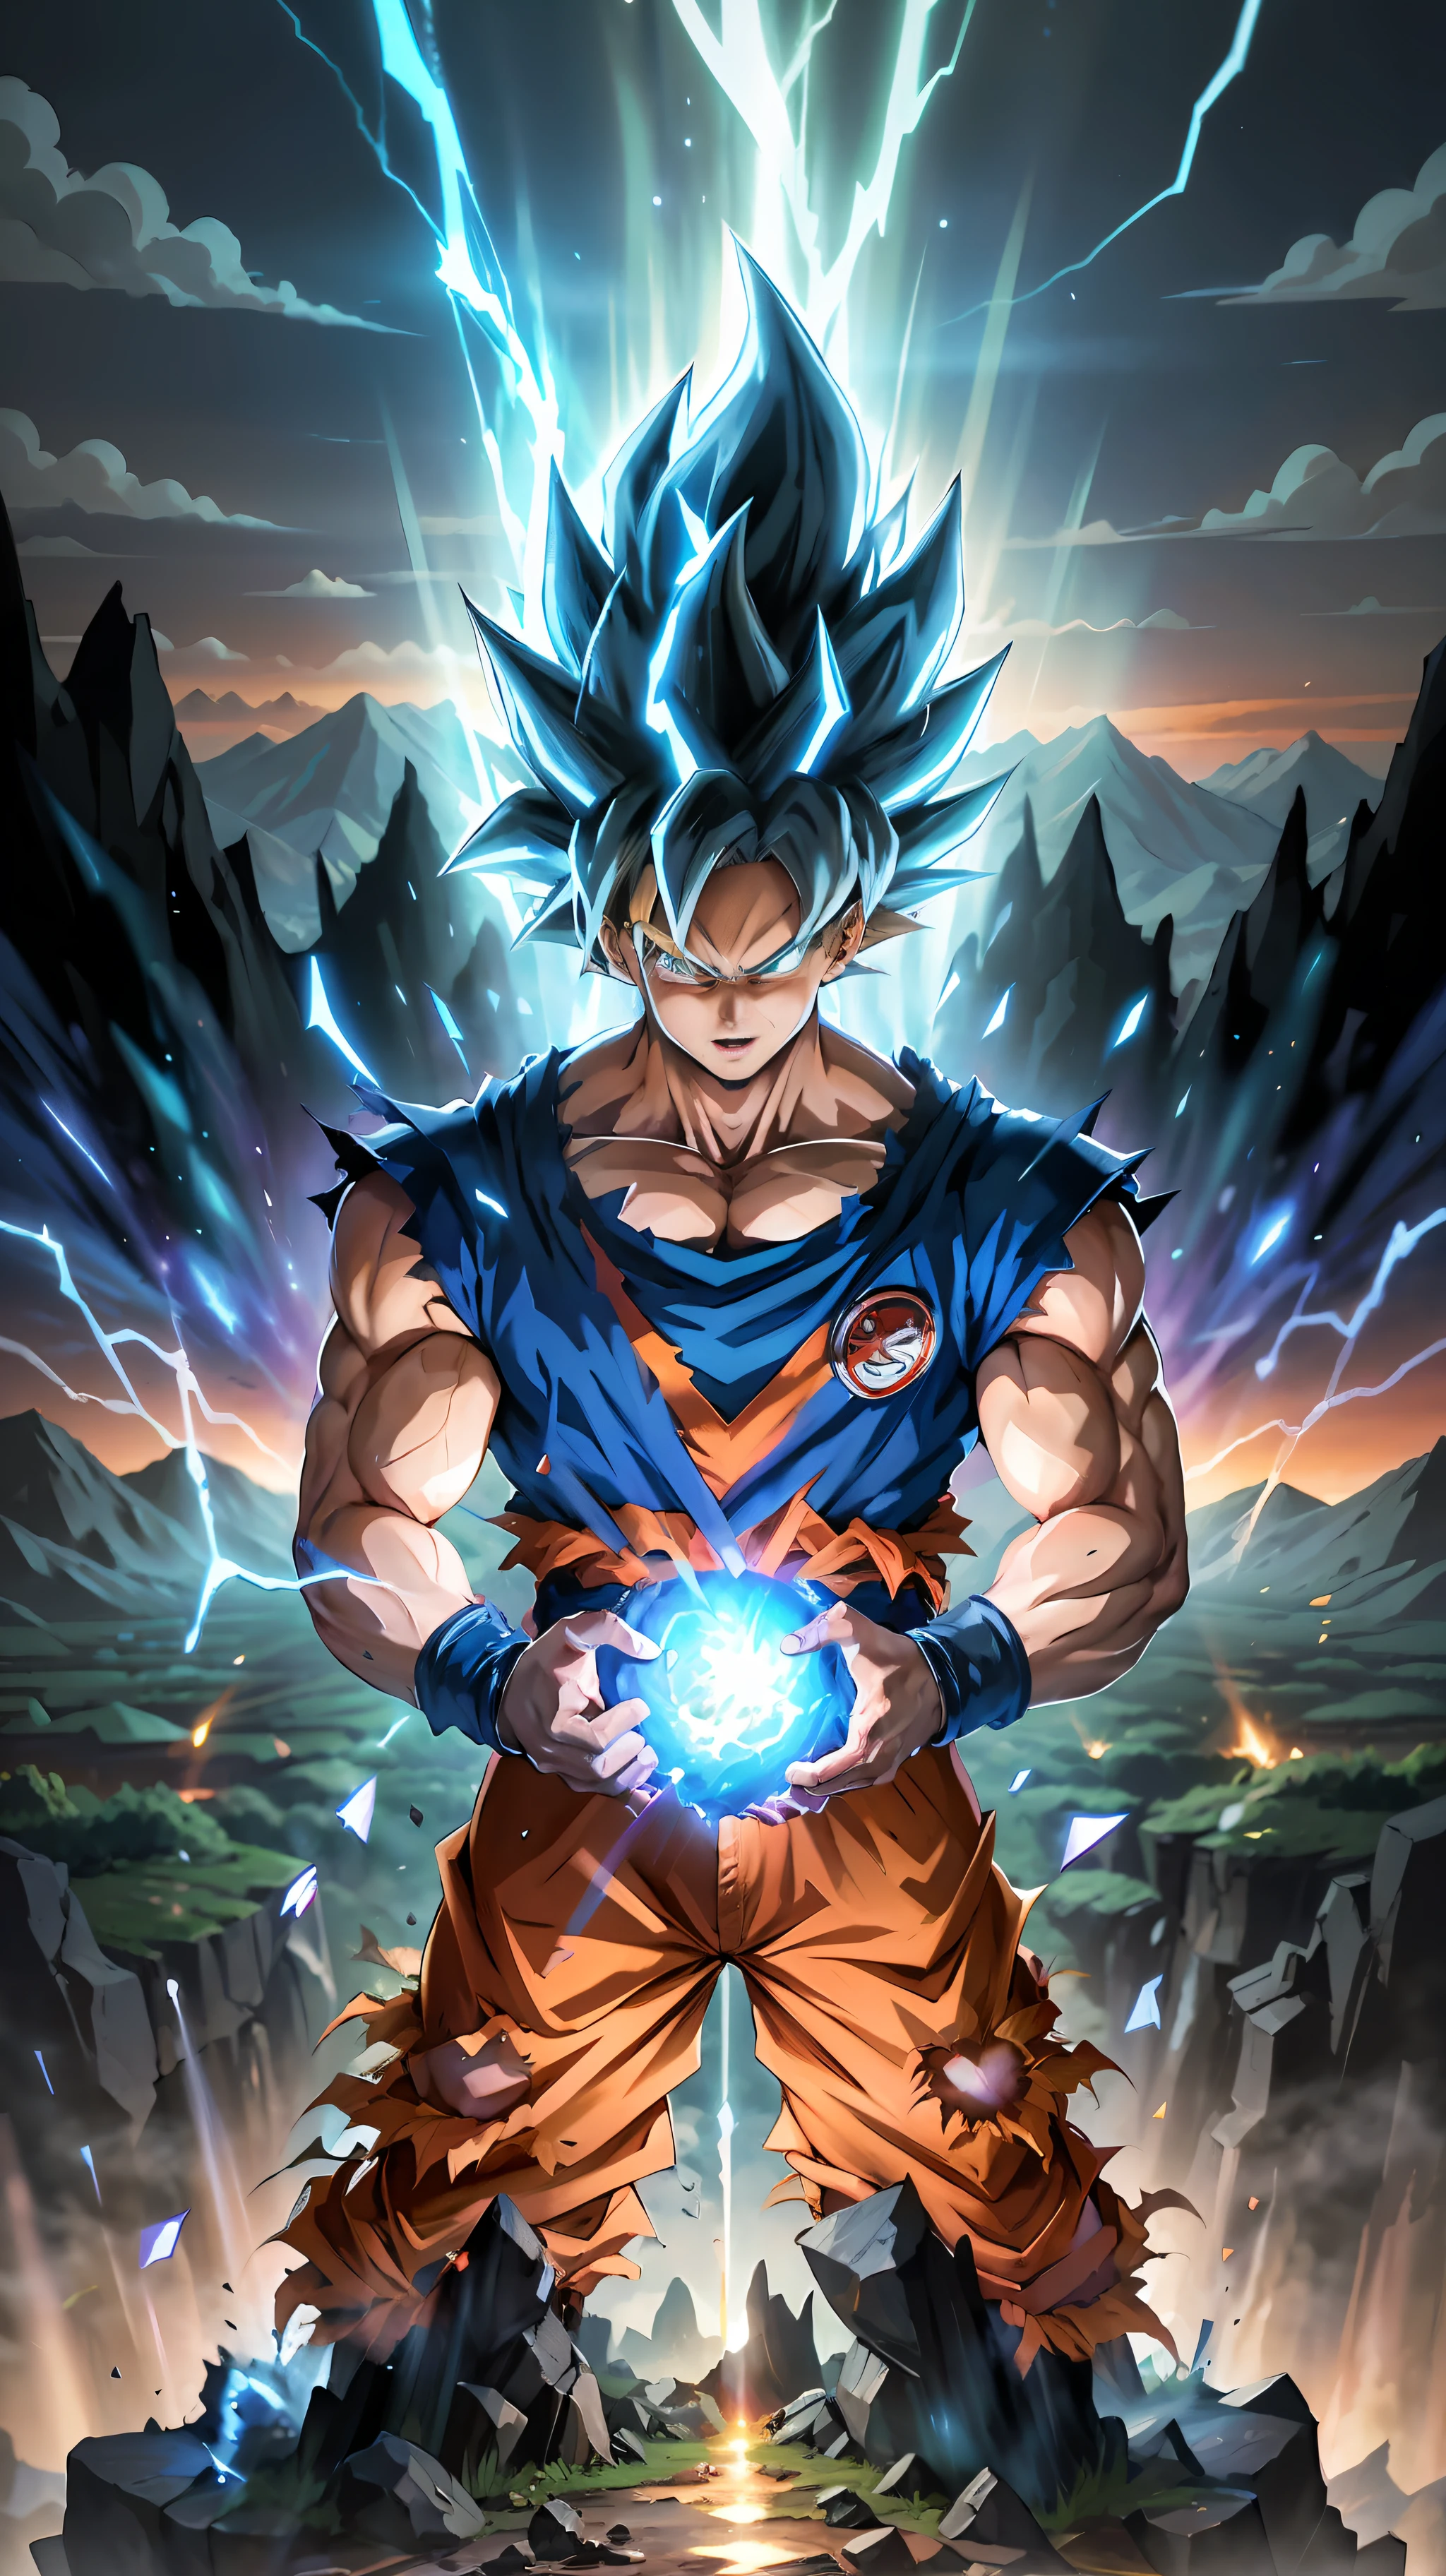 Super Saiyan Goku libère une énorme vague d&#39;énergie alors qu&#39;il se tient au sommet d&#39;une montagne, les environs sont remplis de verdure luxuriante, et le ciel est un mélange de teintes orange et violettes. La vague d&#39;énergie est d&#39;un bleu vif entourée d&#39;étincelles électriques.. (animé:1.2), (Éclairage dramatique:1.1), (couleurs vives:1.3), (cellule ombragée:1.1), (composition dynamique:1.2)